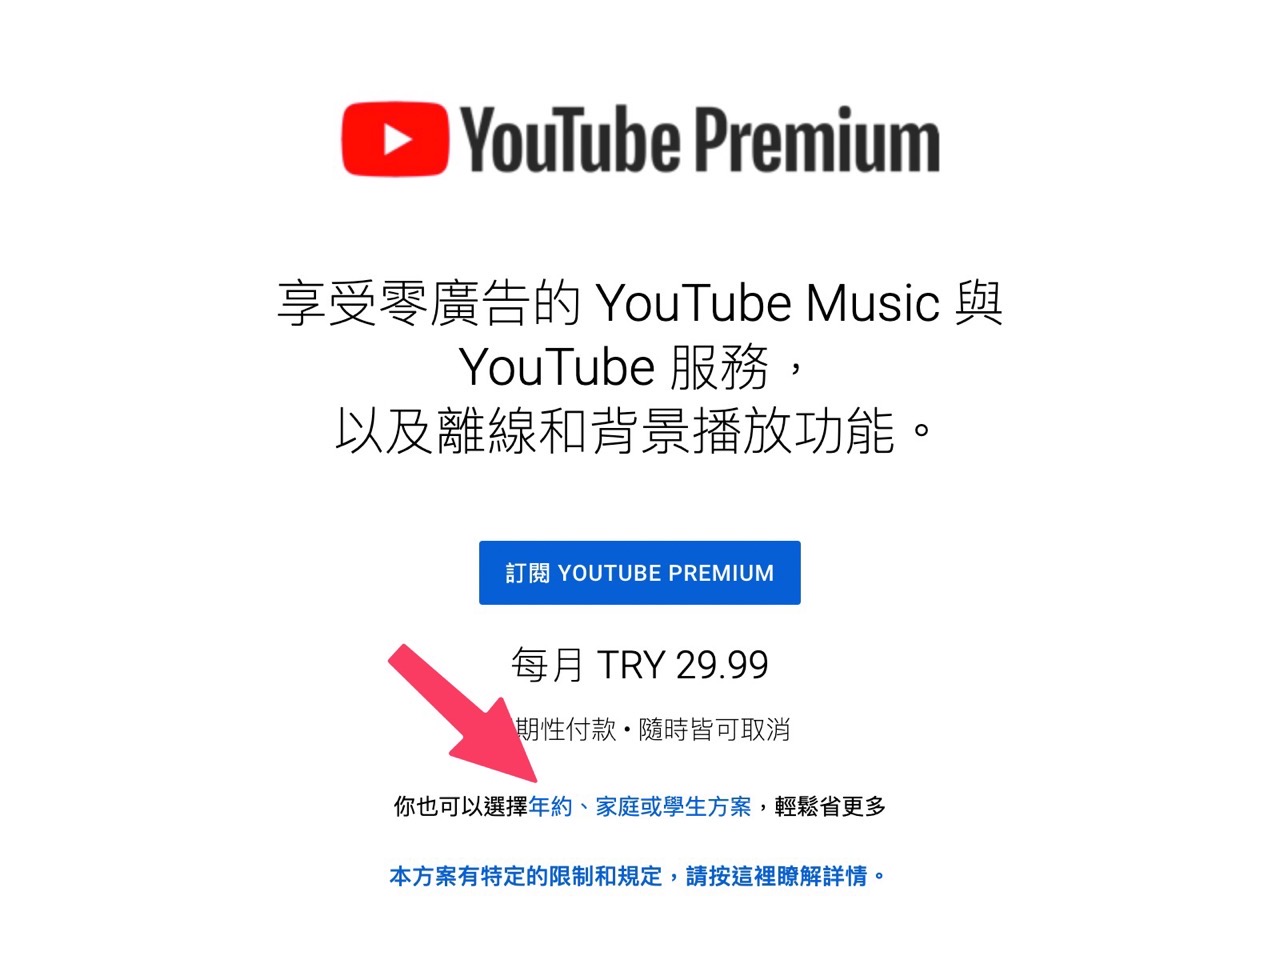 重新整理網頁就會看到新的 YouTube Premium 當地價格